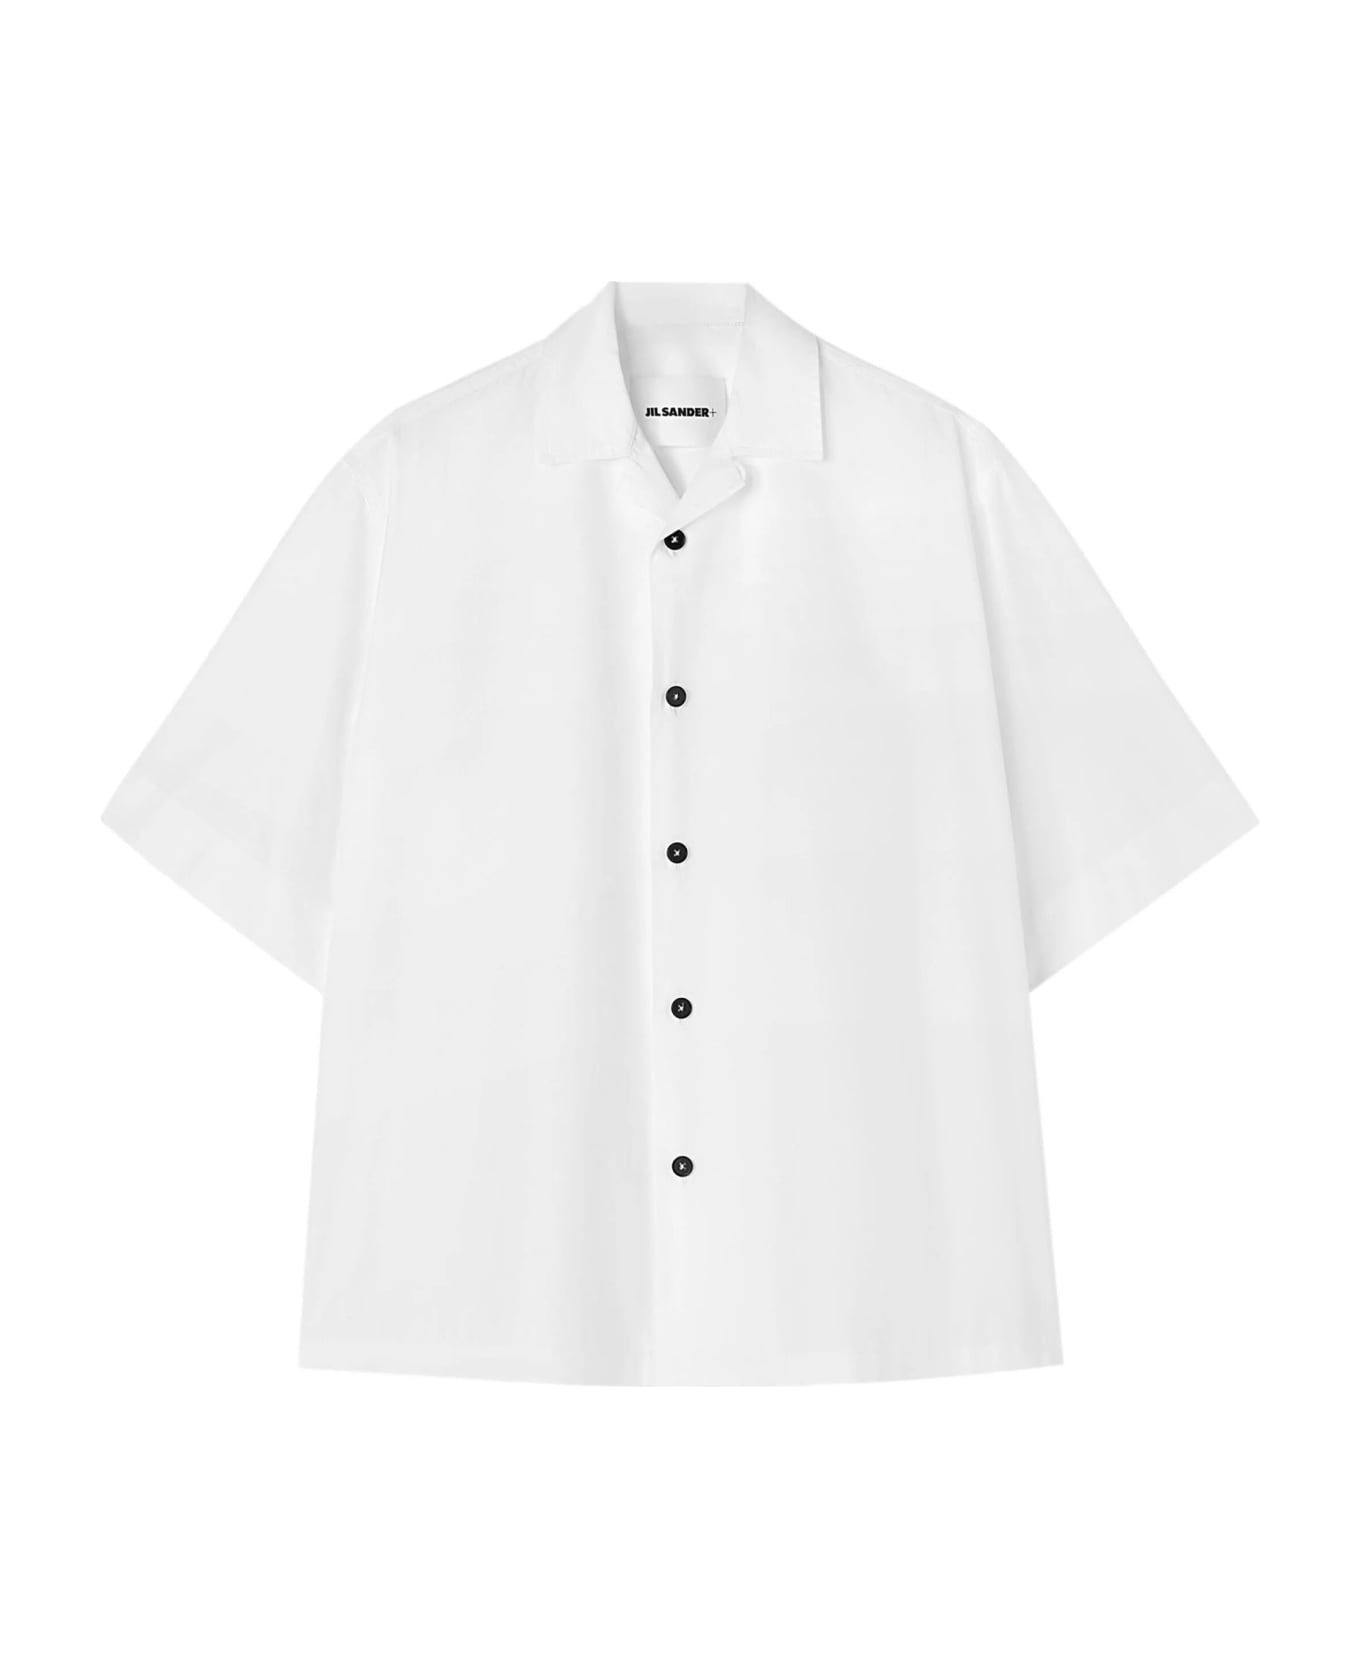 Jil Sander Bowling Shirt - WHITE